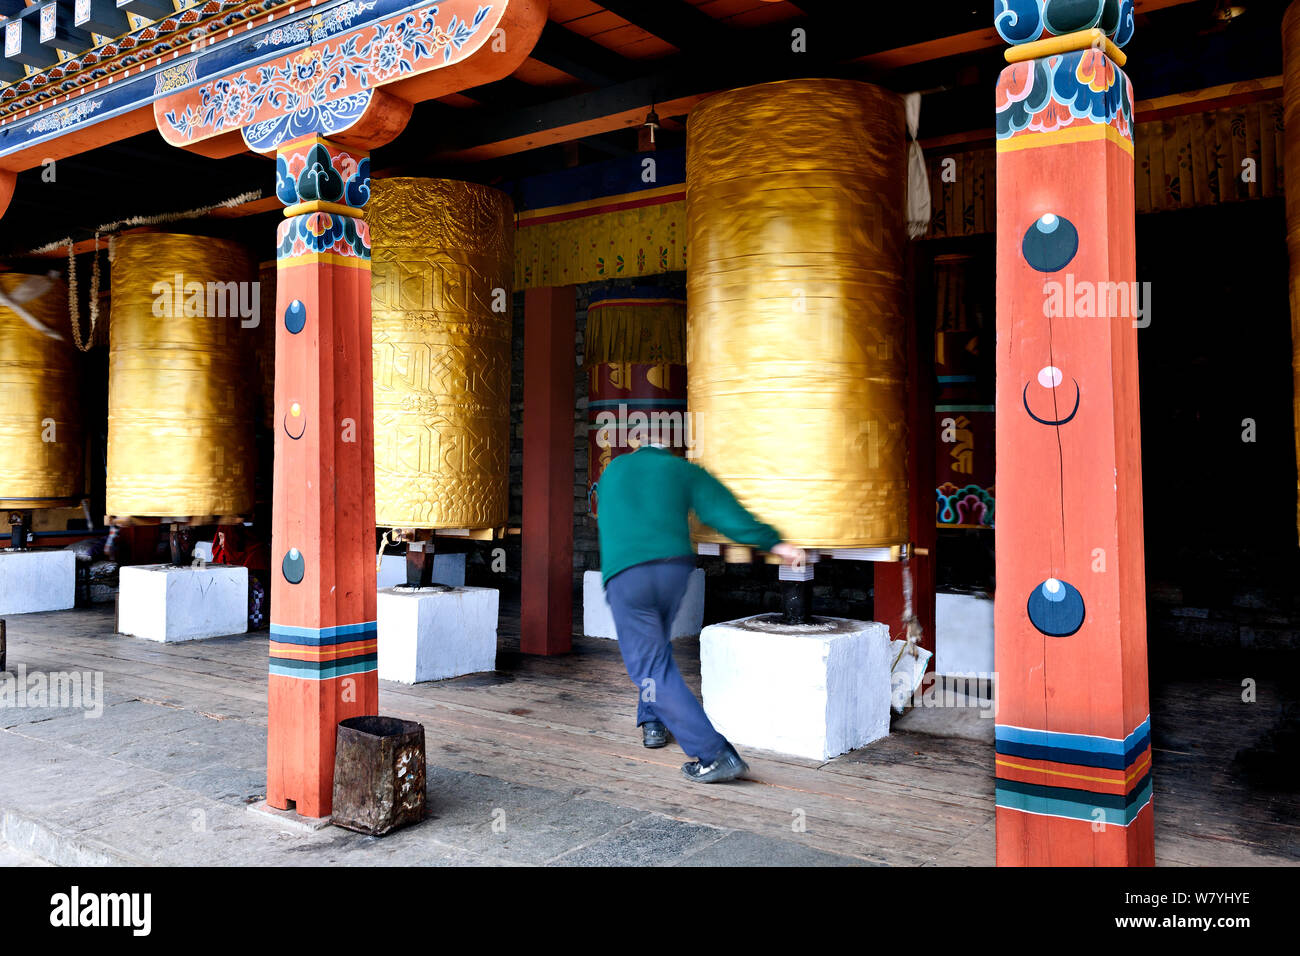 La rotation d'un homme à prières au National Memorial Chorten à Thimphu. Ce chorten de style tibétain a été construit en 1974 comme un mémorial à la troisième roi Jigme Dorji Wangchuck. Le Bhoutan, octobre 2014. Banque D'Images